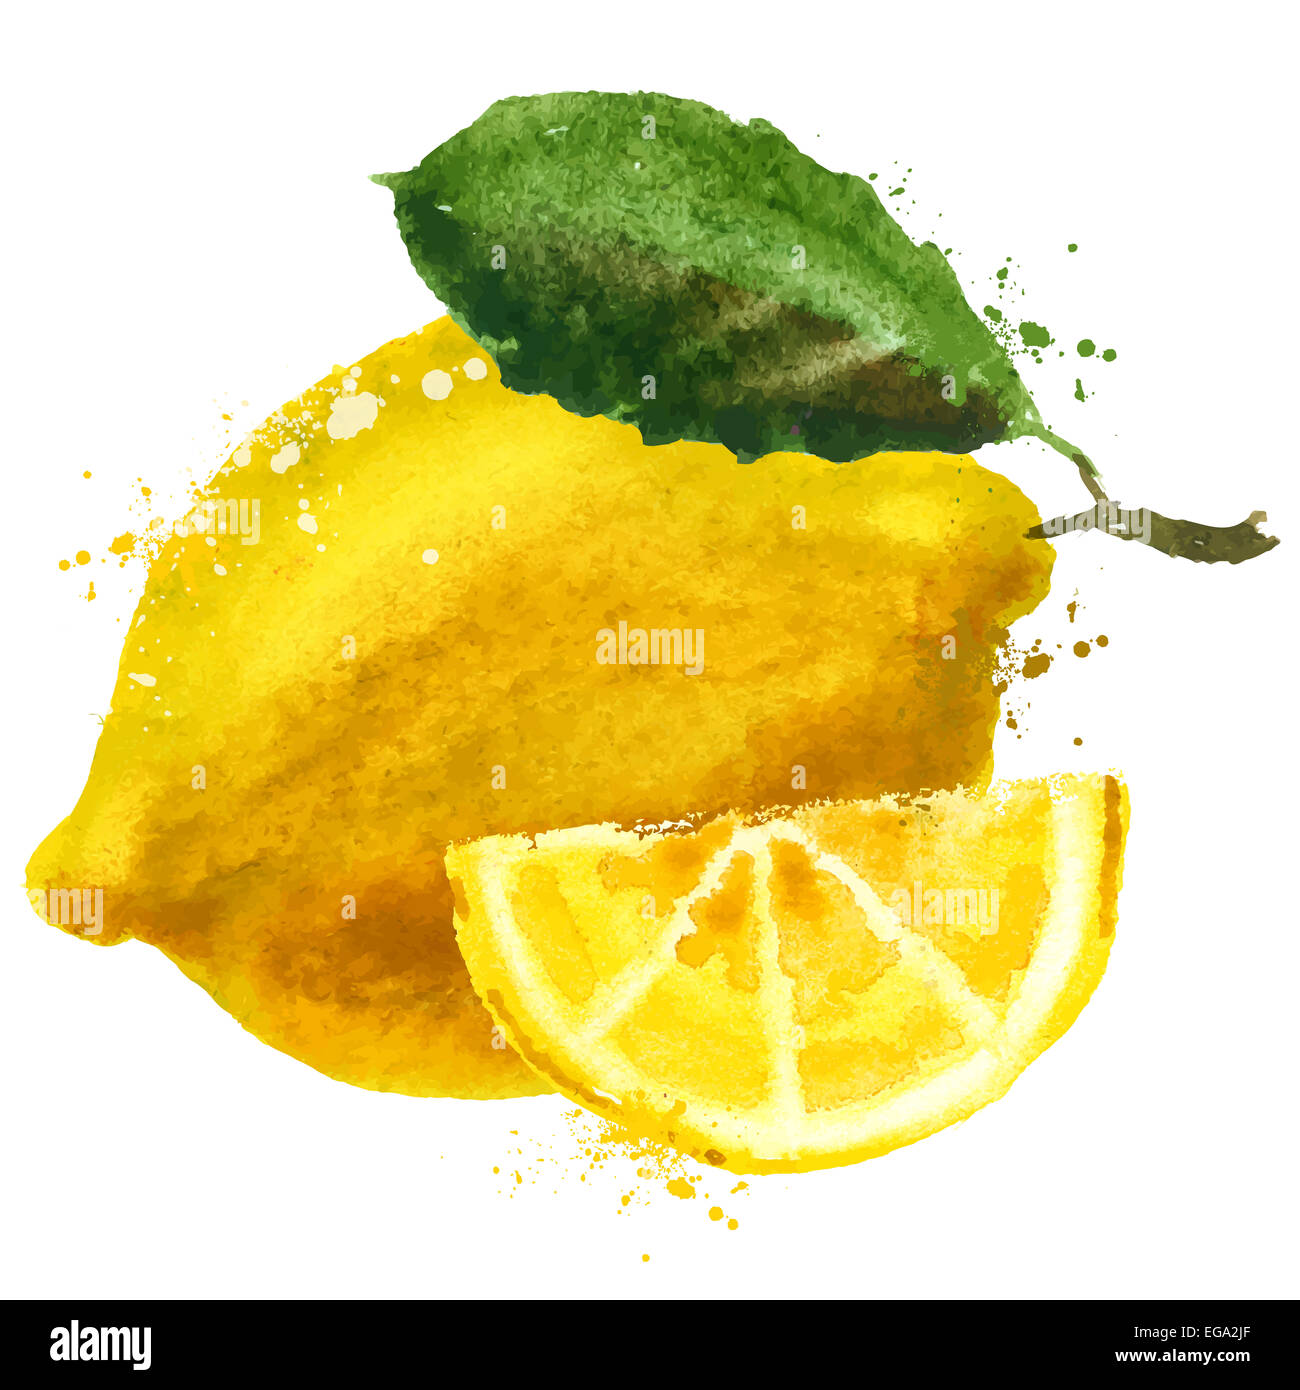 Aquarell. Zitrone auf einem weißen Hintergrund. Vektor-illustration Stockfoto